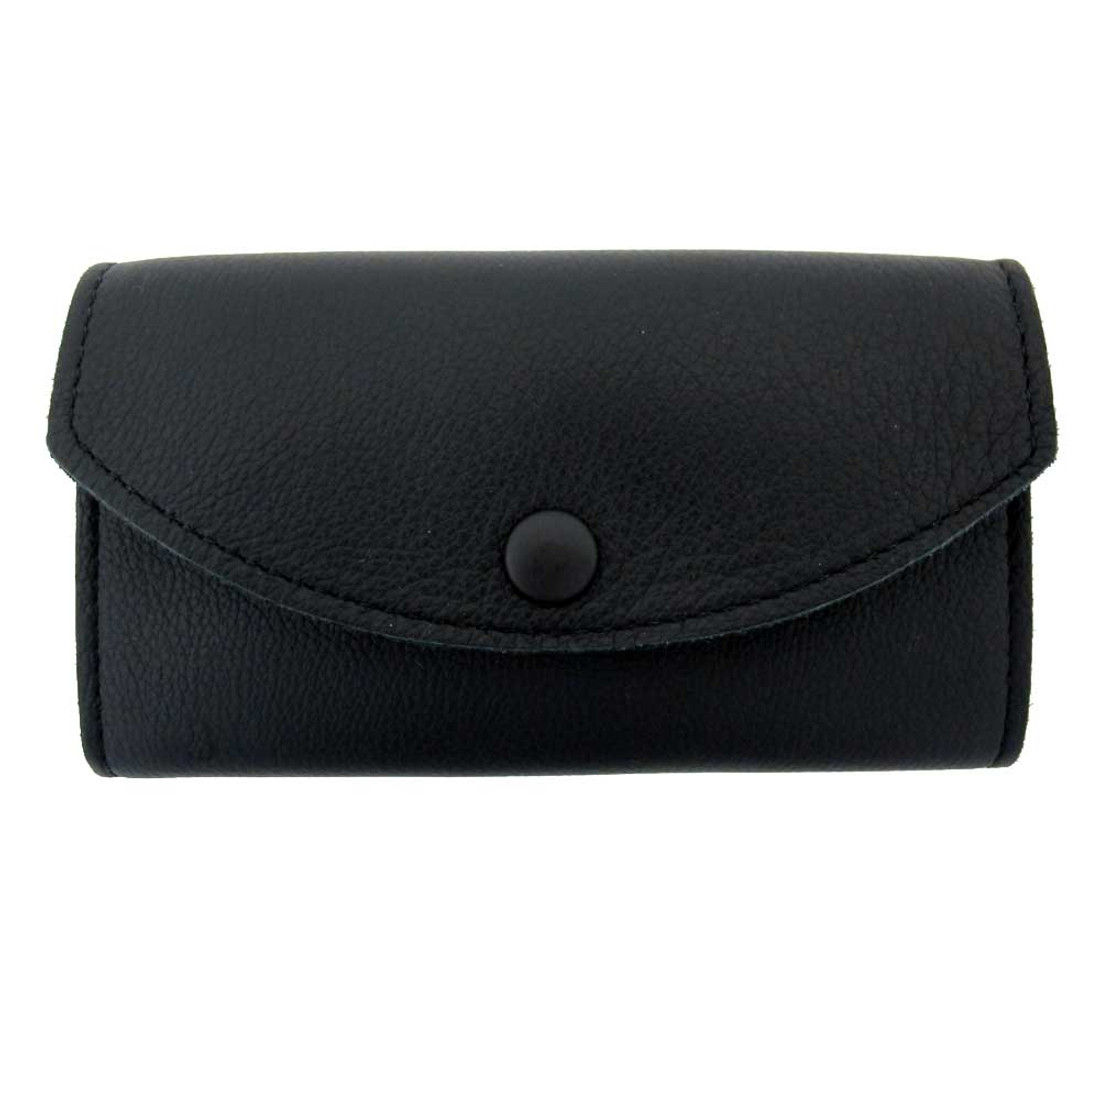 Women's black leather wallet.